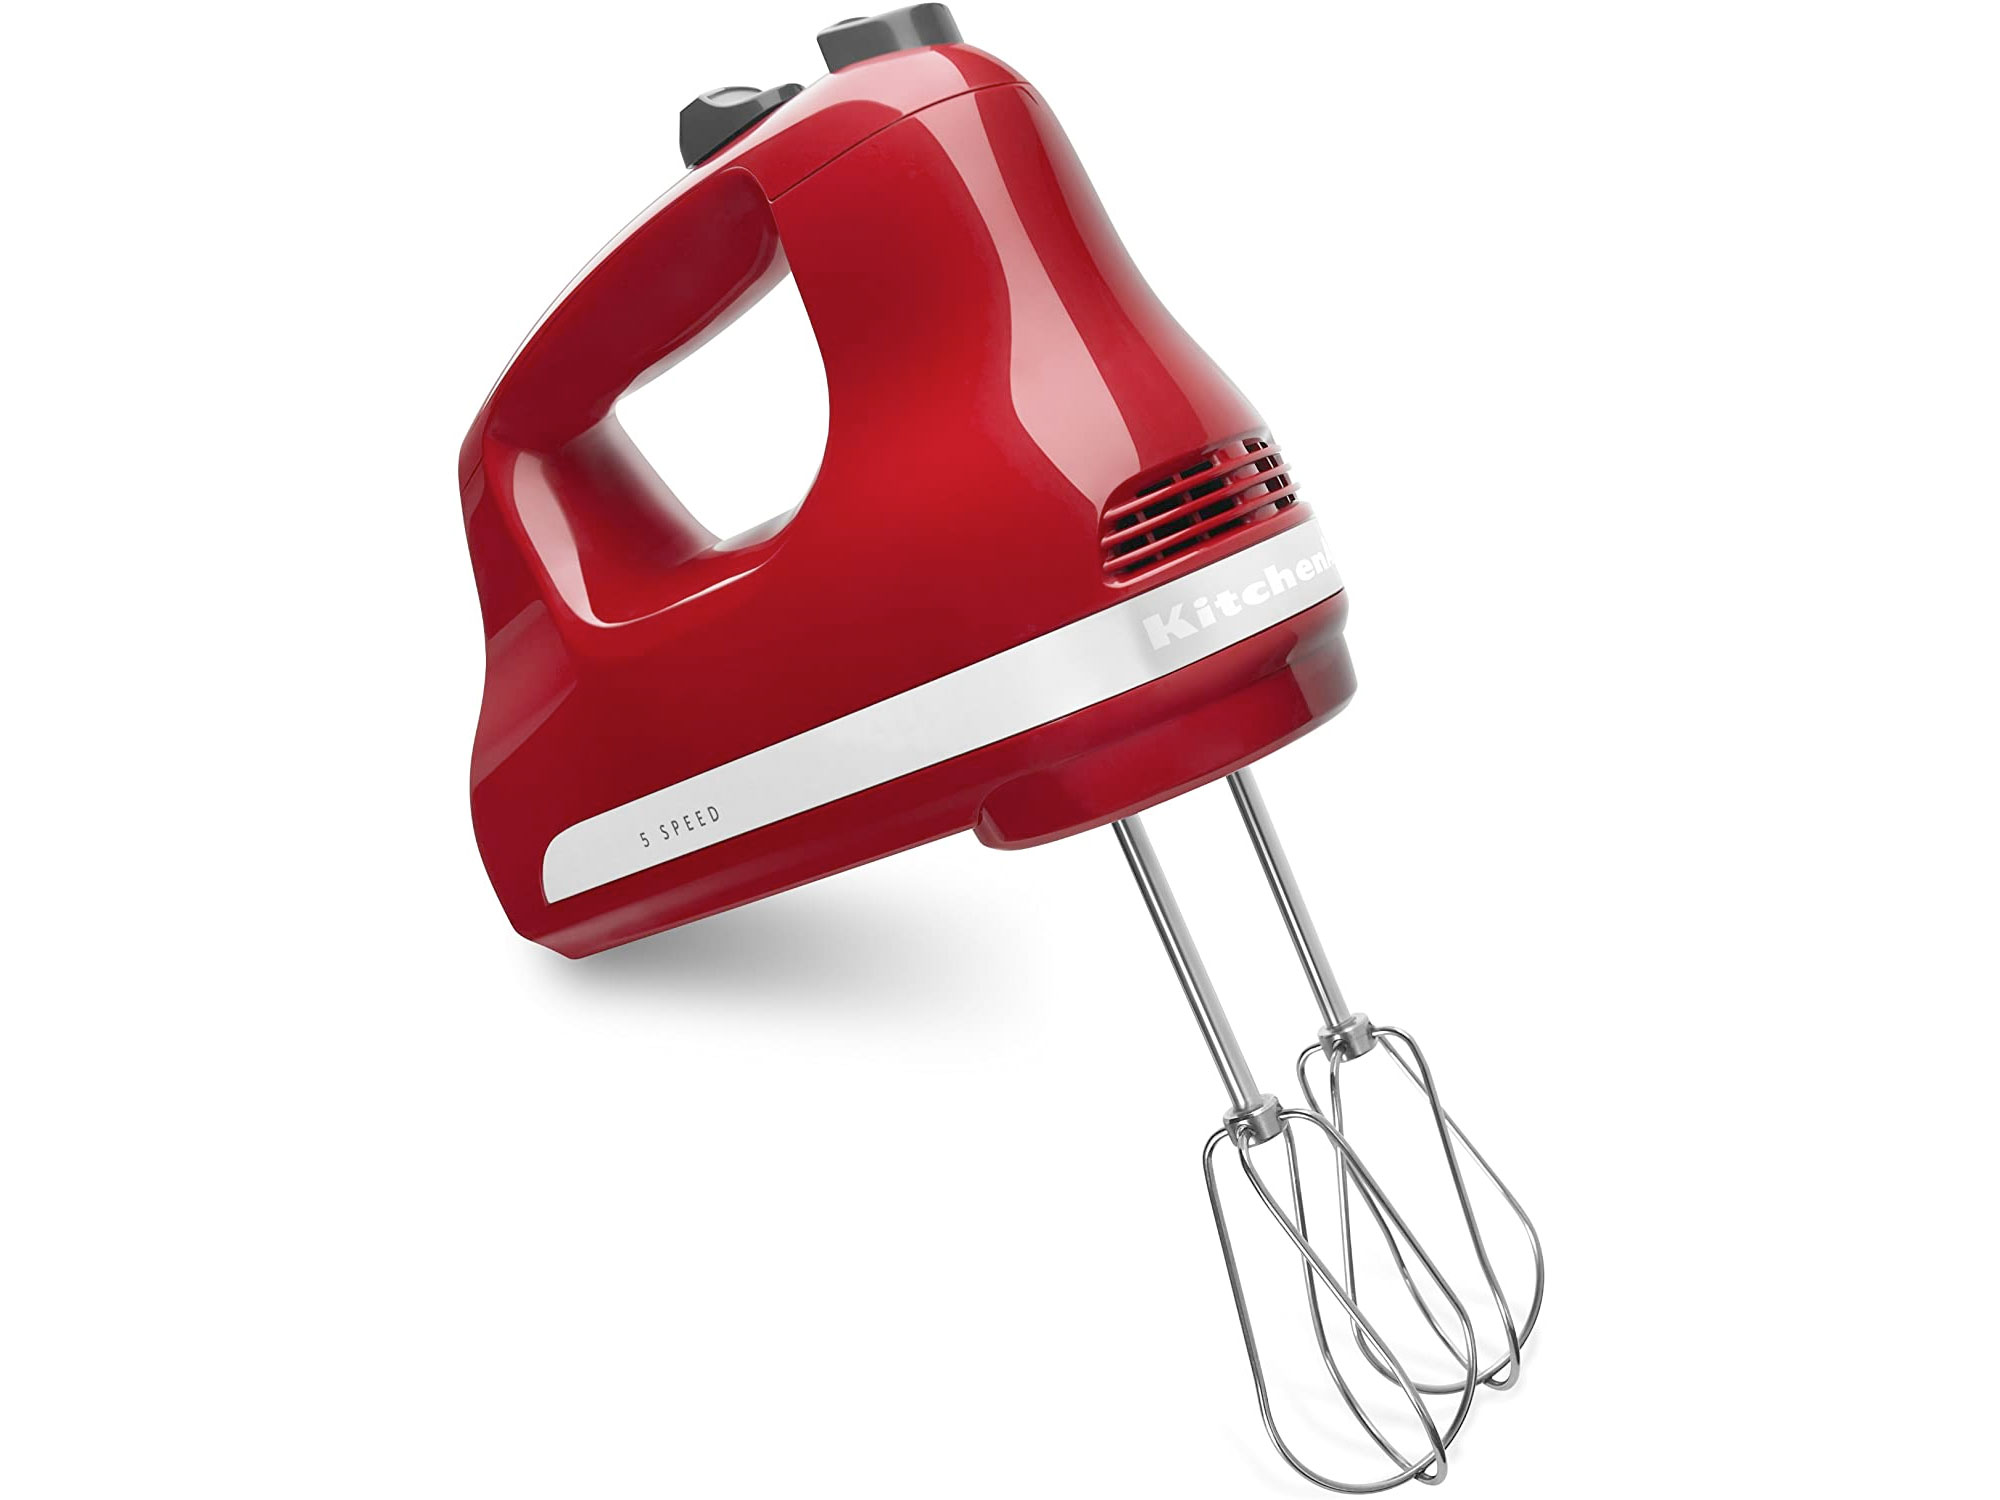 Amazon：KitchenAid 5-Speed Hand Mixer只賣$49.98